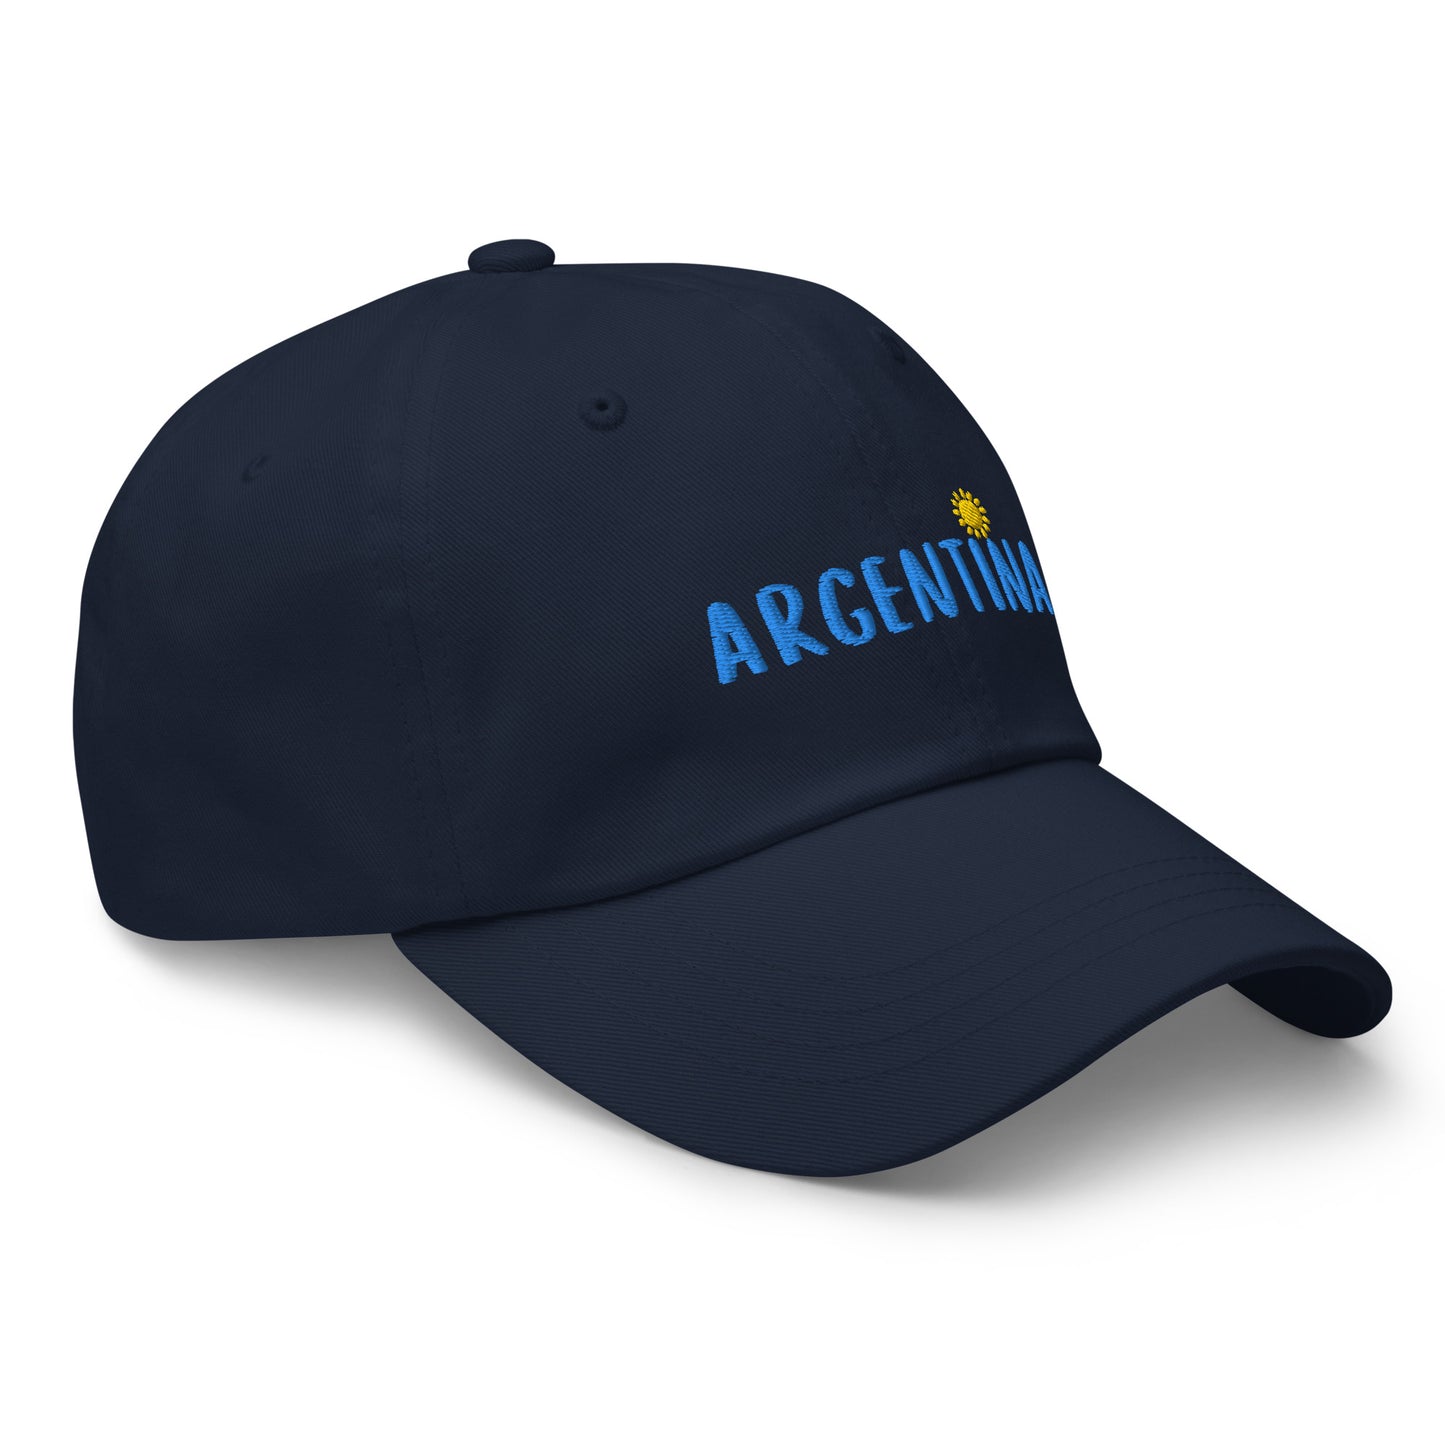 🇦🇷 Argentina Hat